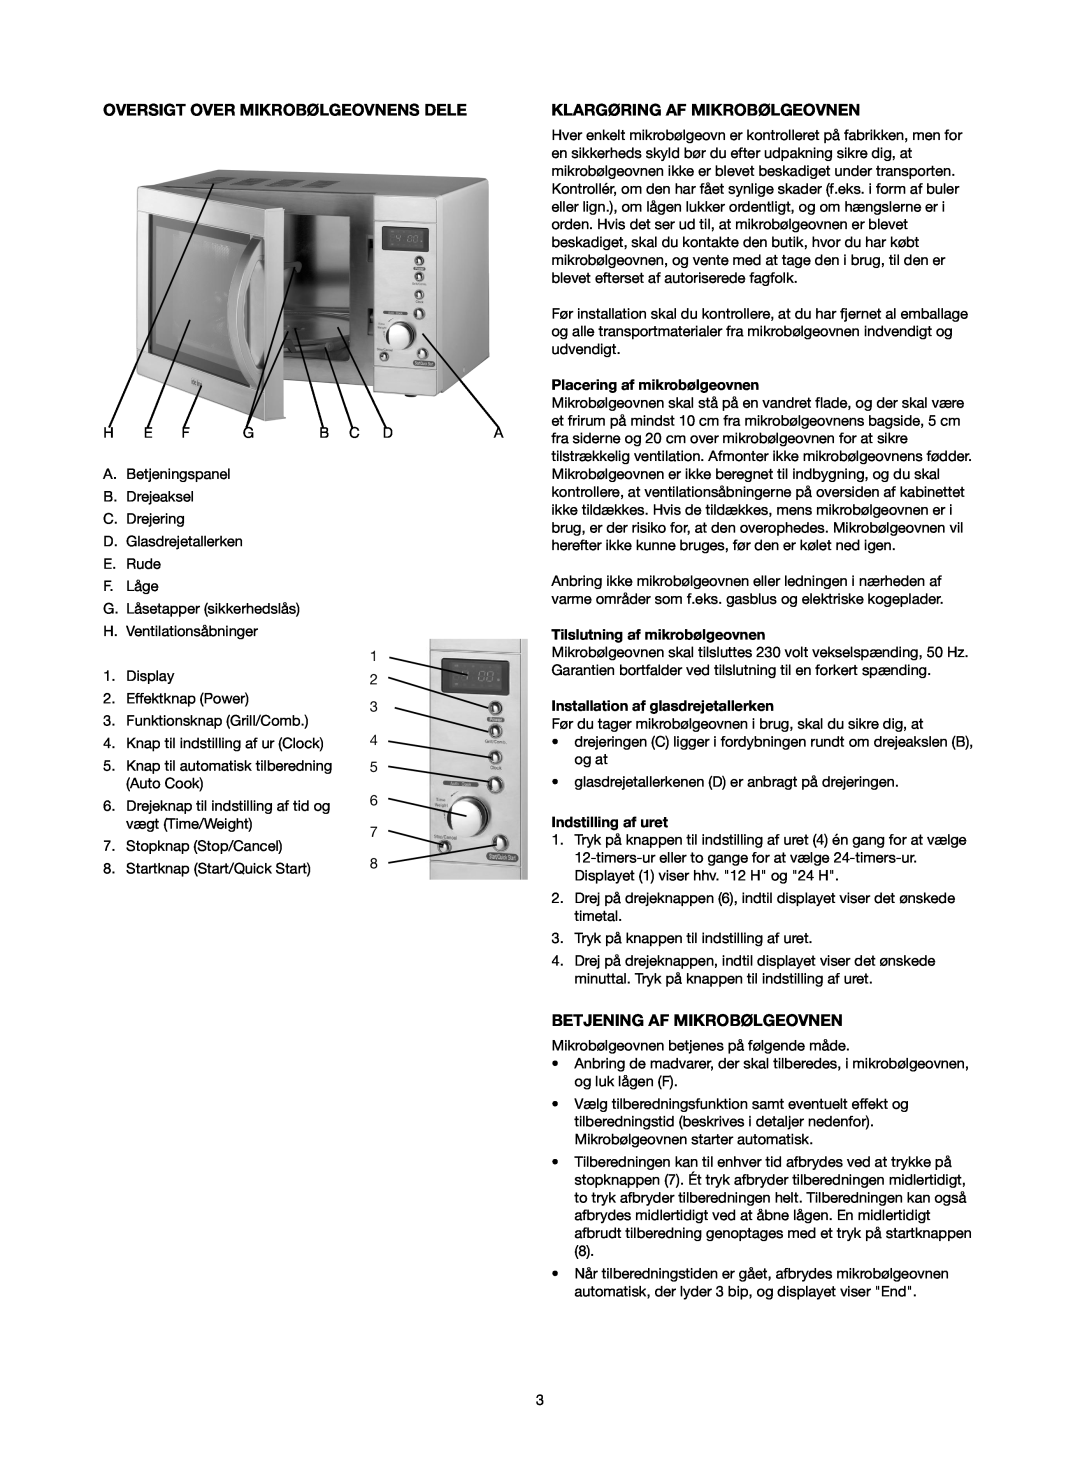 Melissa 753-087 manual Oversigt Over Mikrobølgeovnens Dele, Klargøring Af Mikrobølgeovnen, Betjening Af Mikrobølgeovnen 